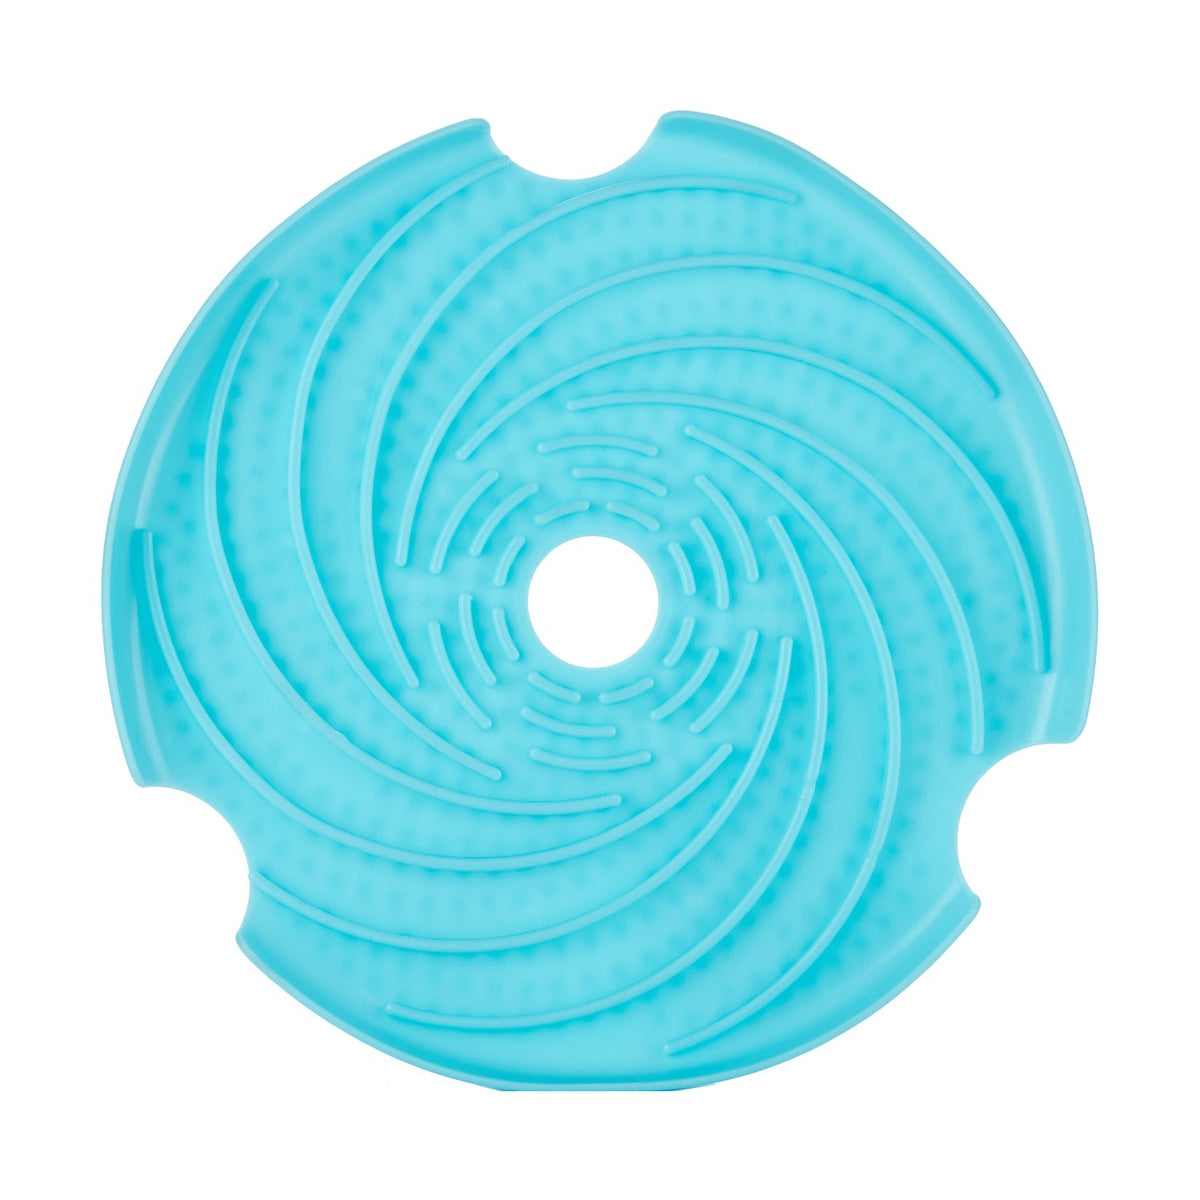 Plato Frisbee Spin Interactive Lick Feeder y Frisbee